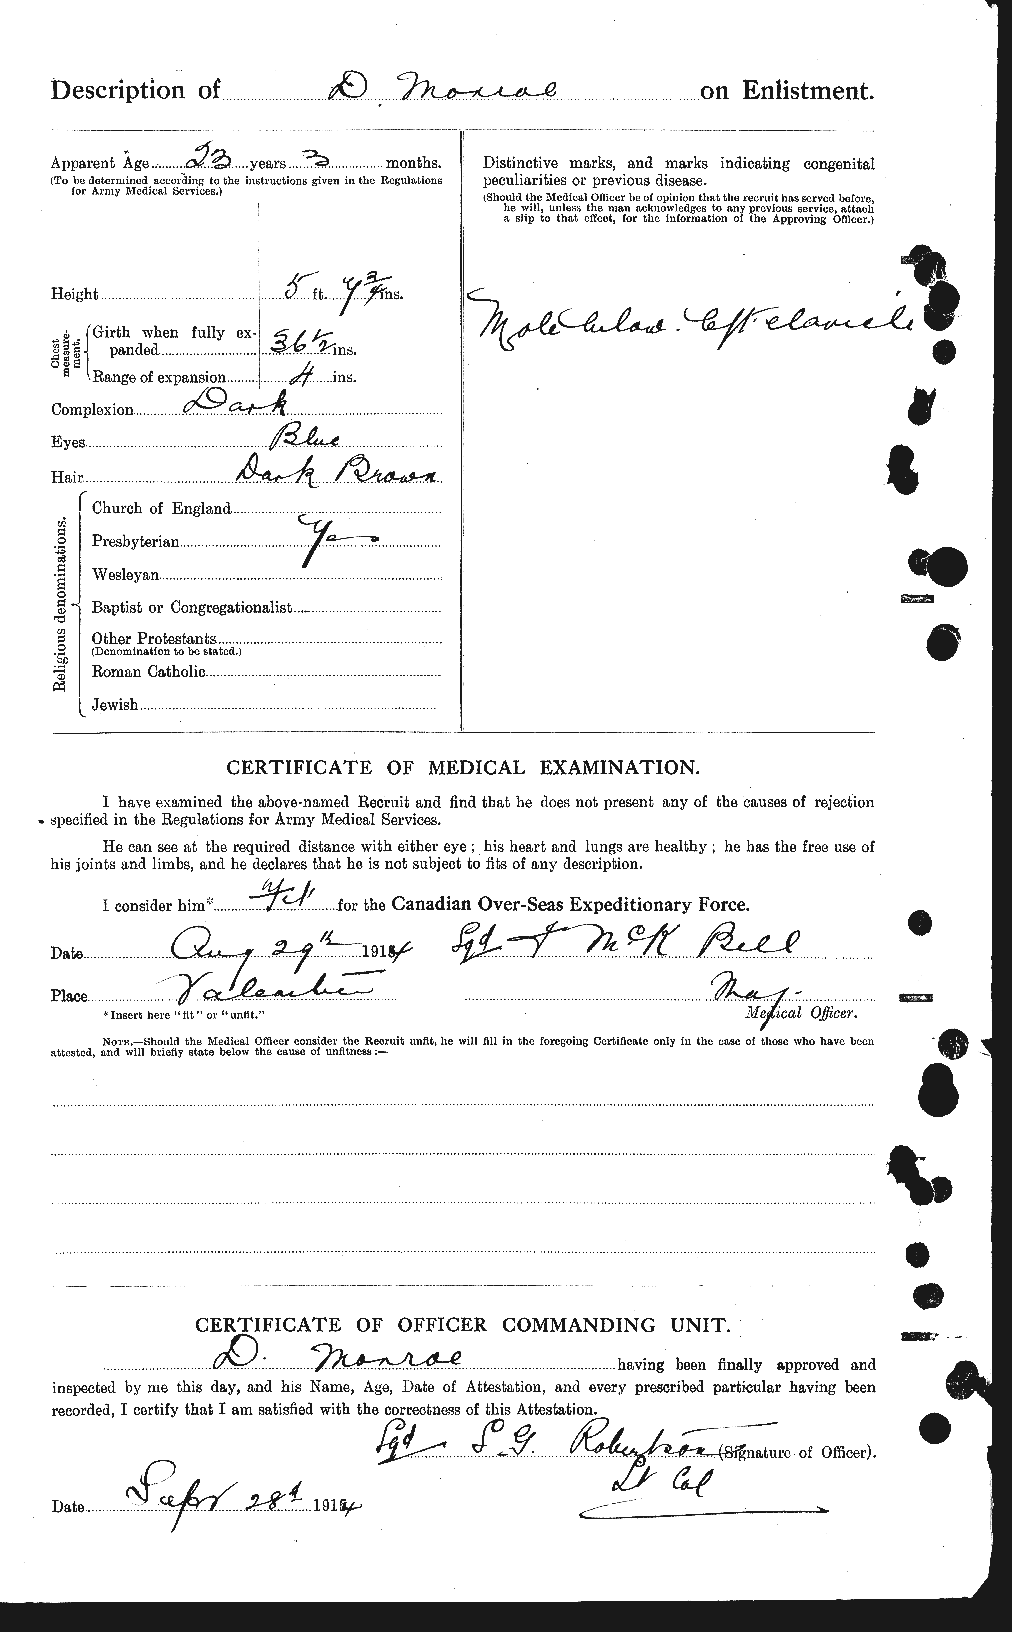 Dossiers du Personnel de la Première Guerre mondiale - CEC 515490b